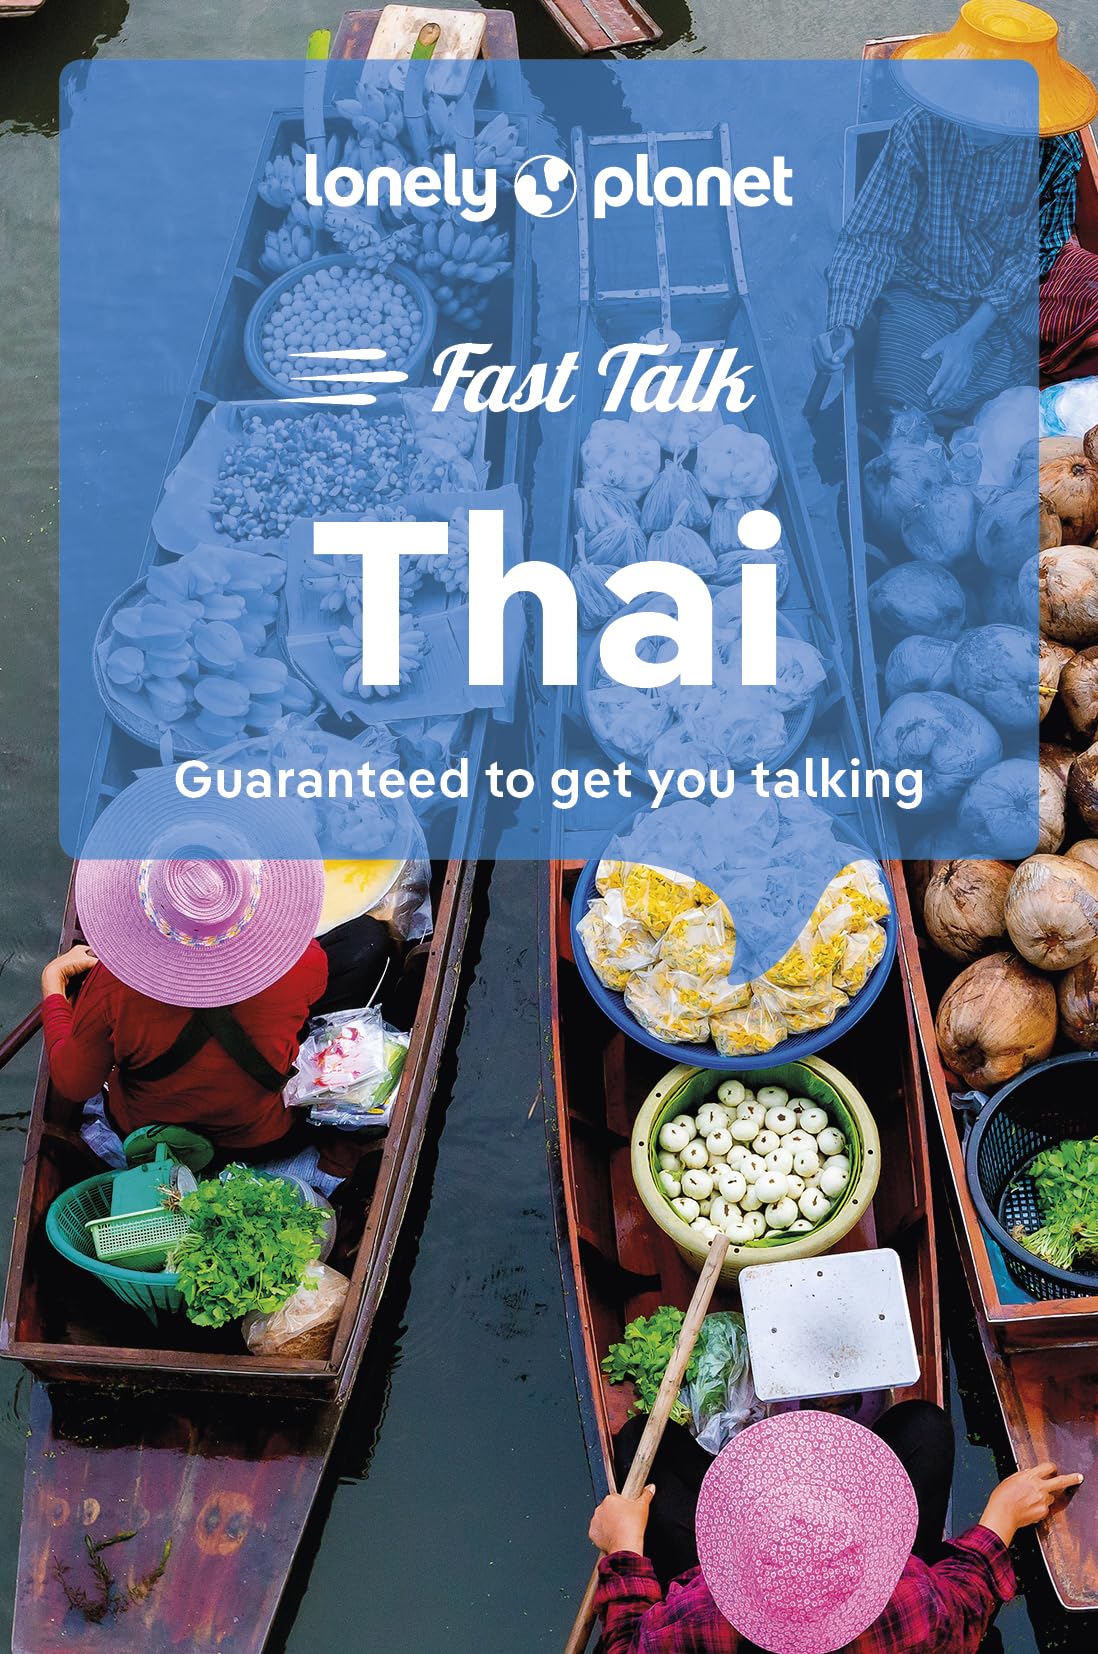 מדריך שיחון תאילנדית לונלי פלנט 2